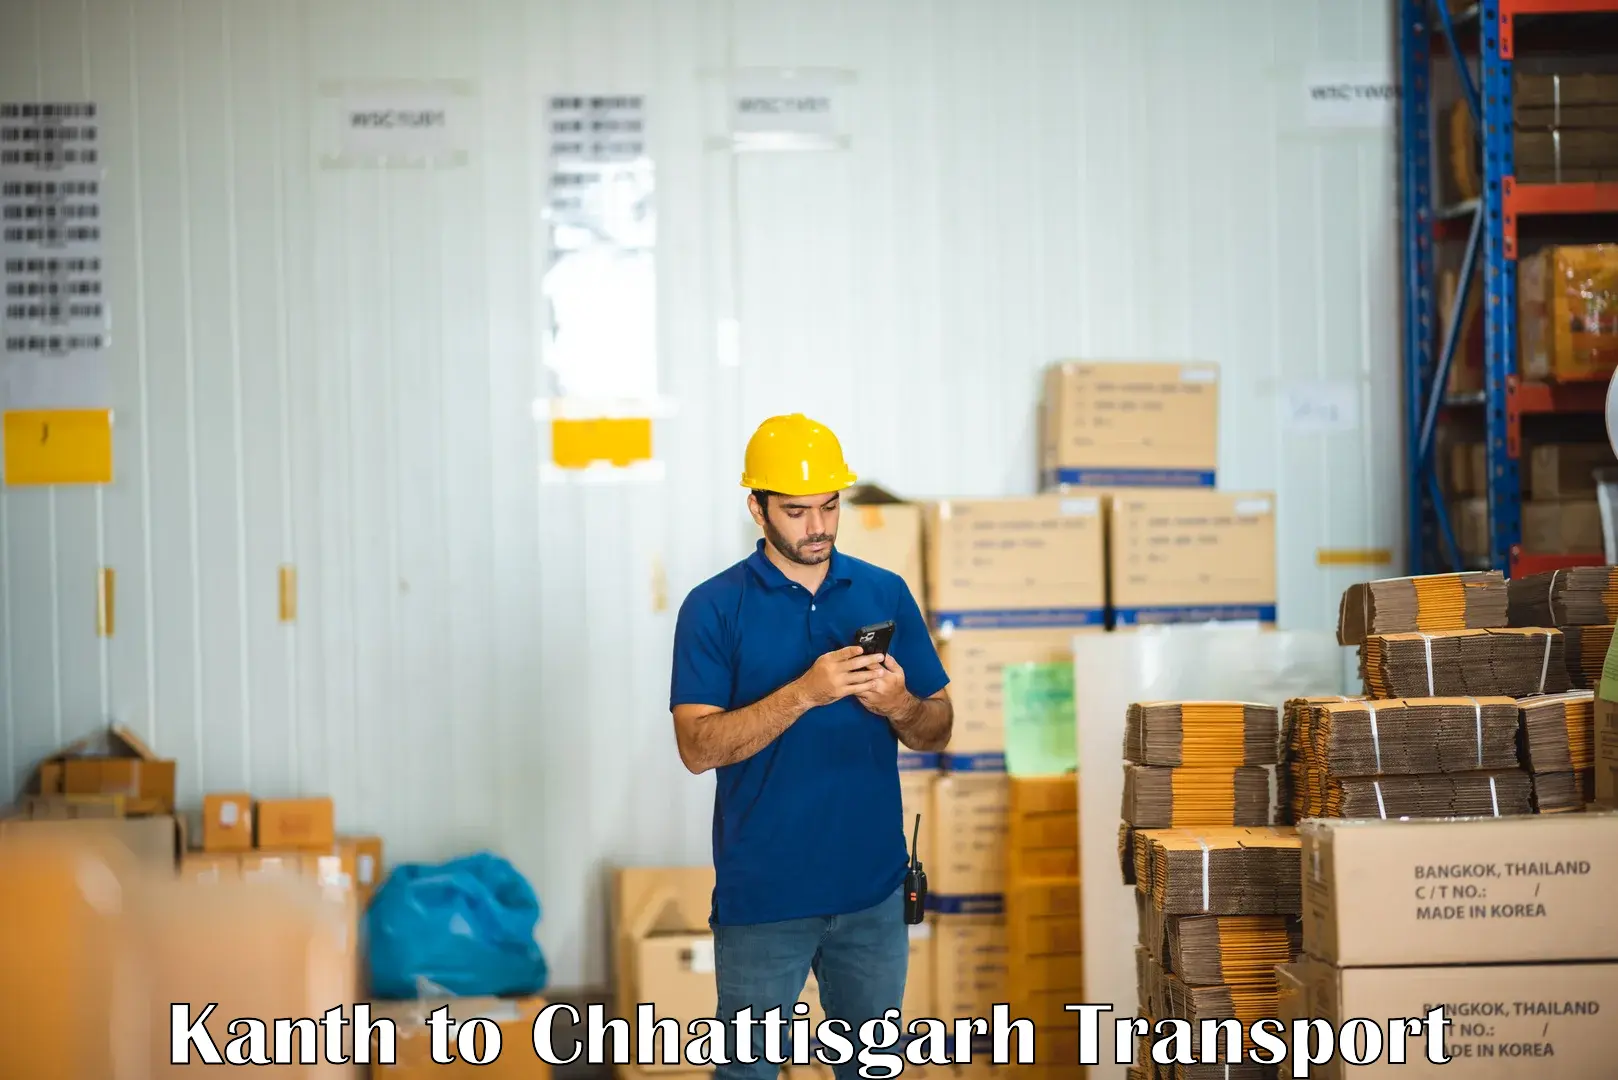 Cargo train transport services in Kanth to Bijapur Chhattisgarh